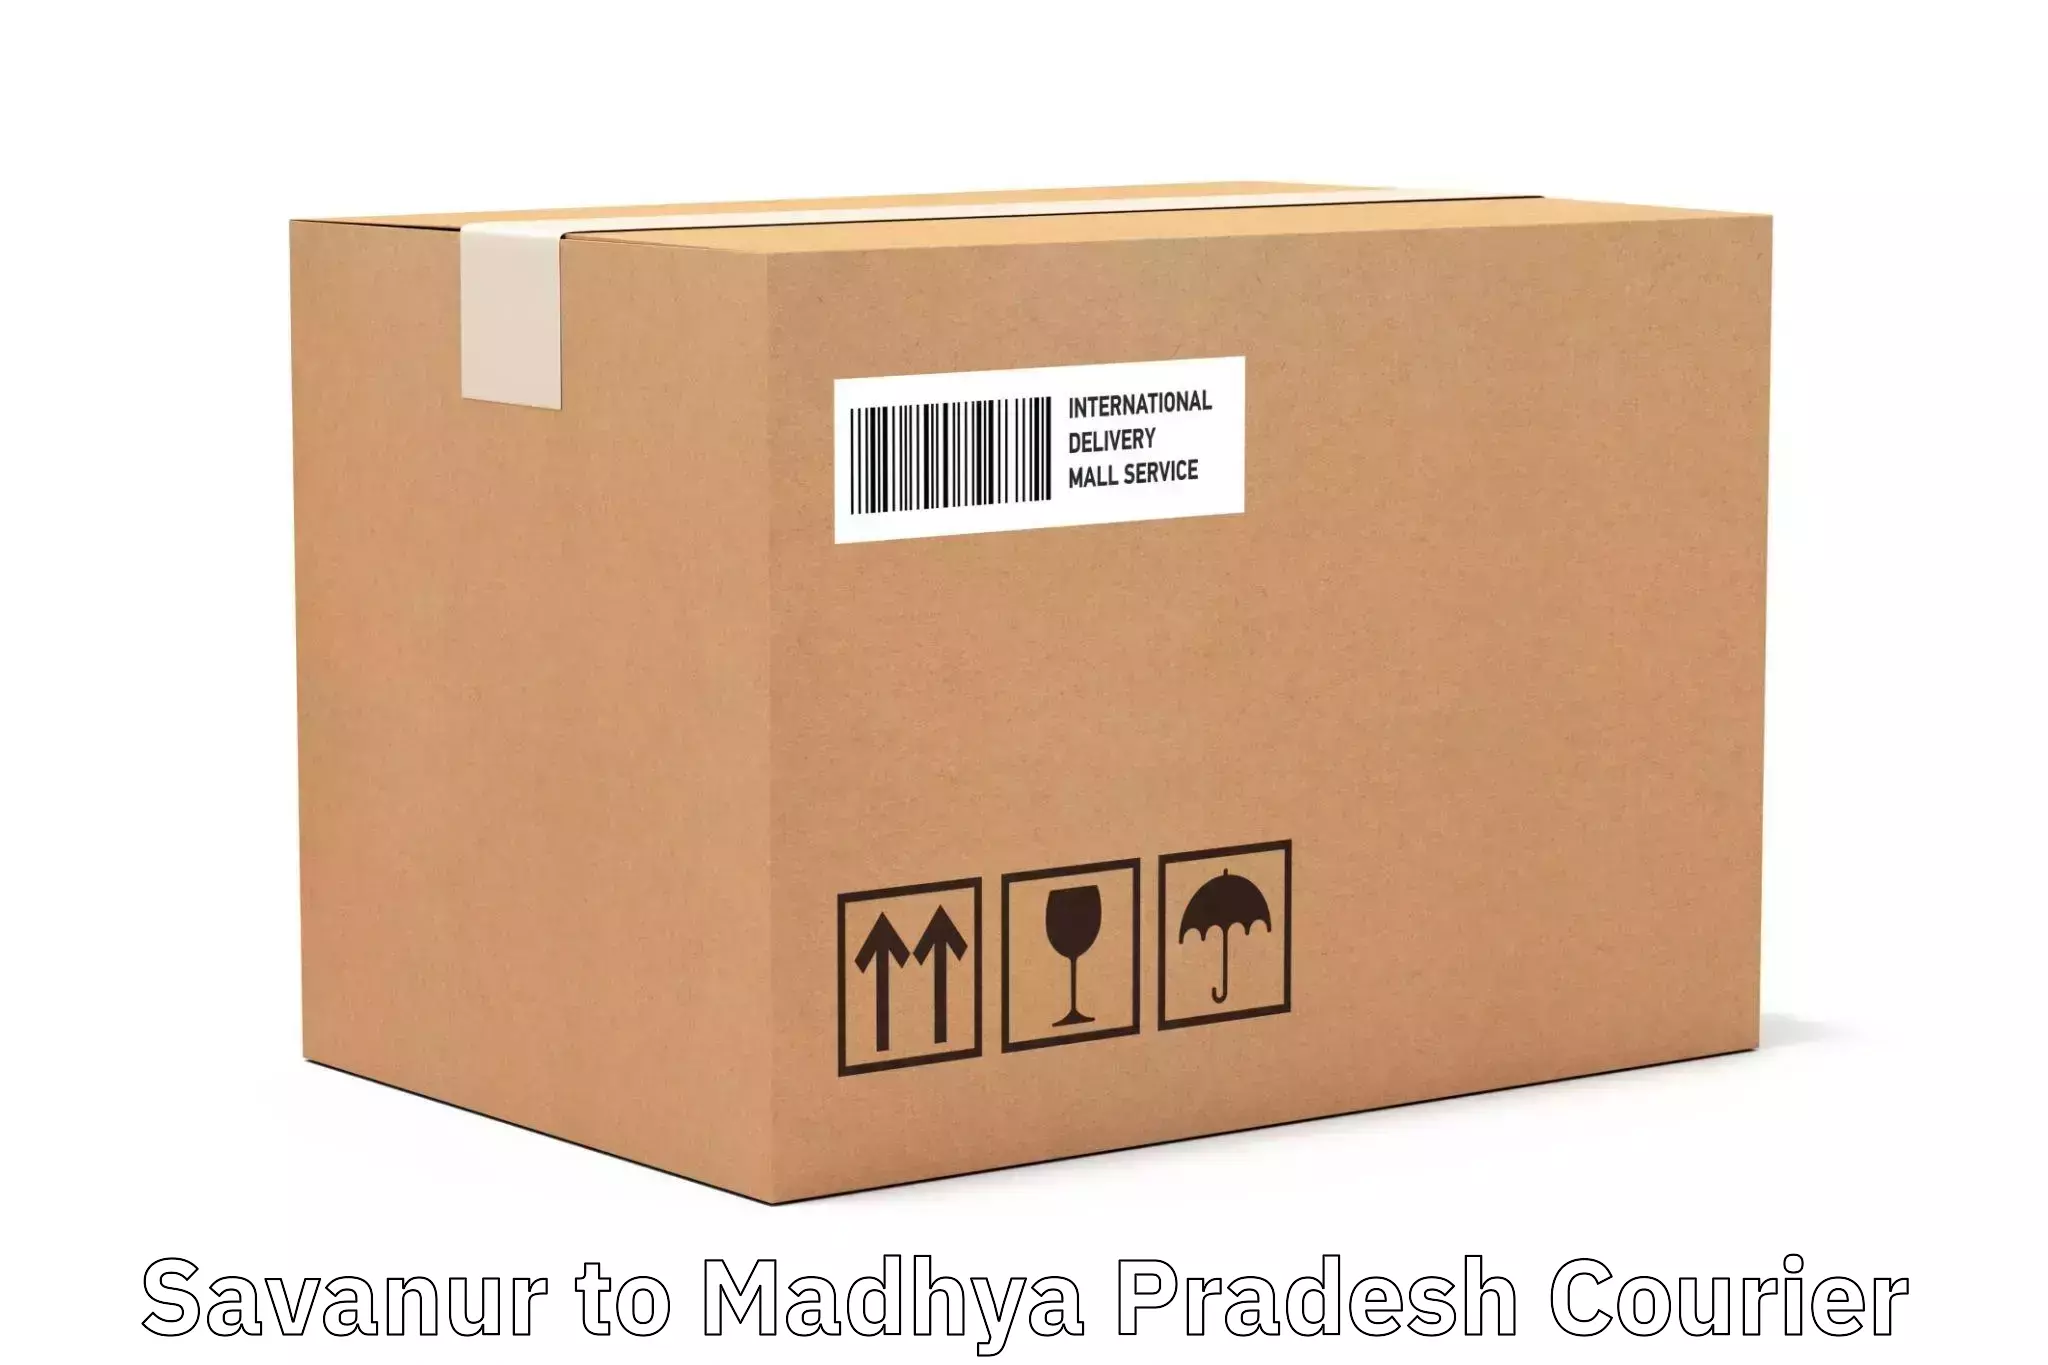 Customer-centric shipping Savanur to Mandla